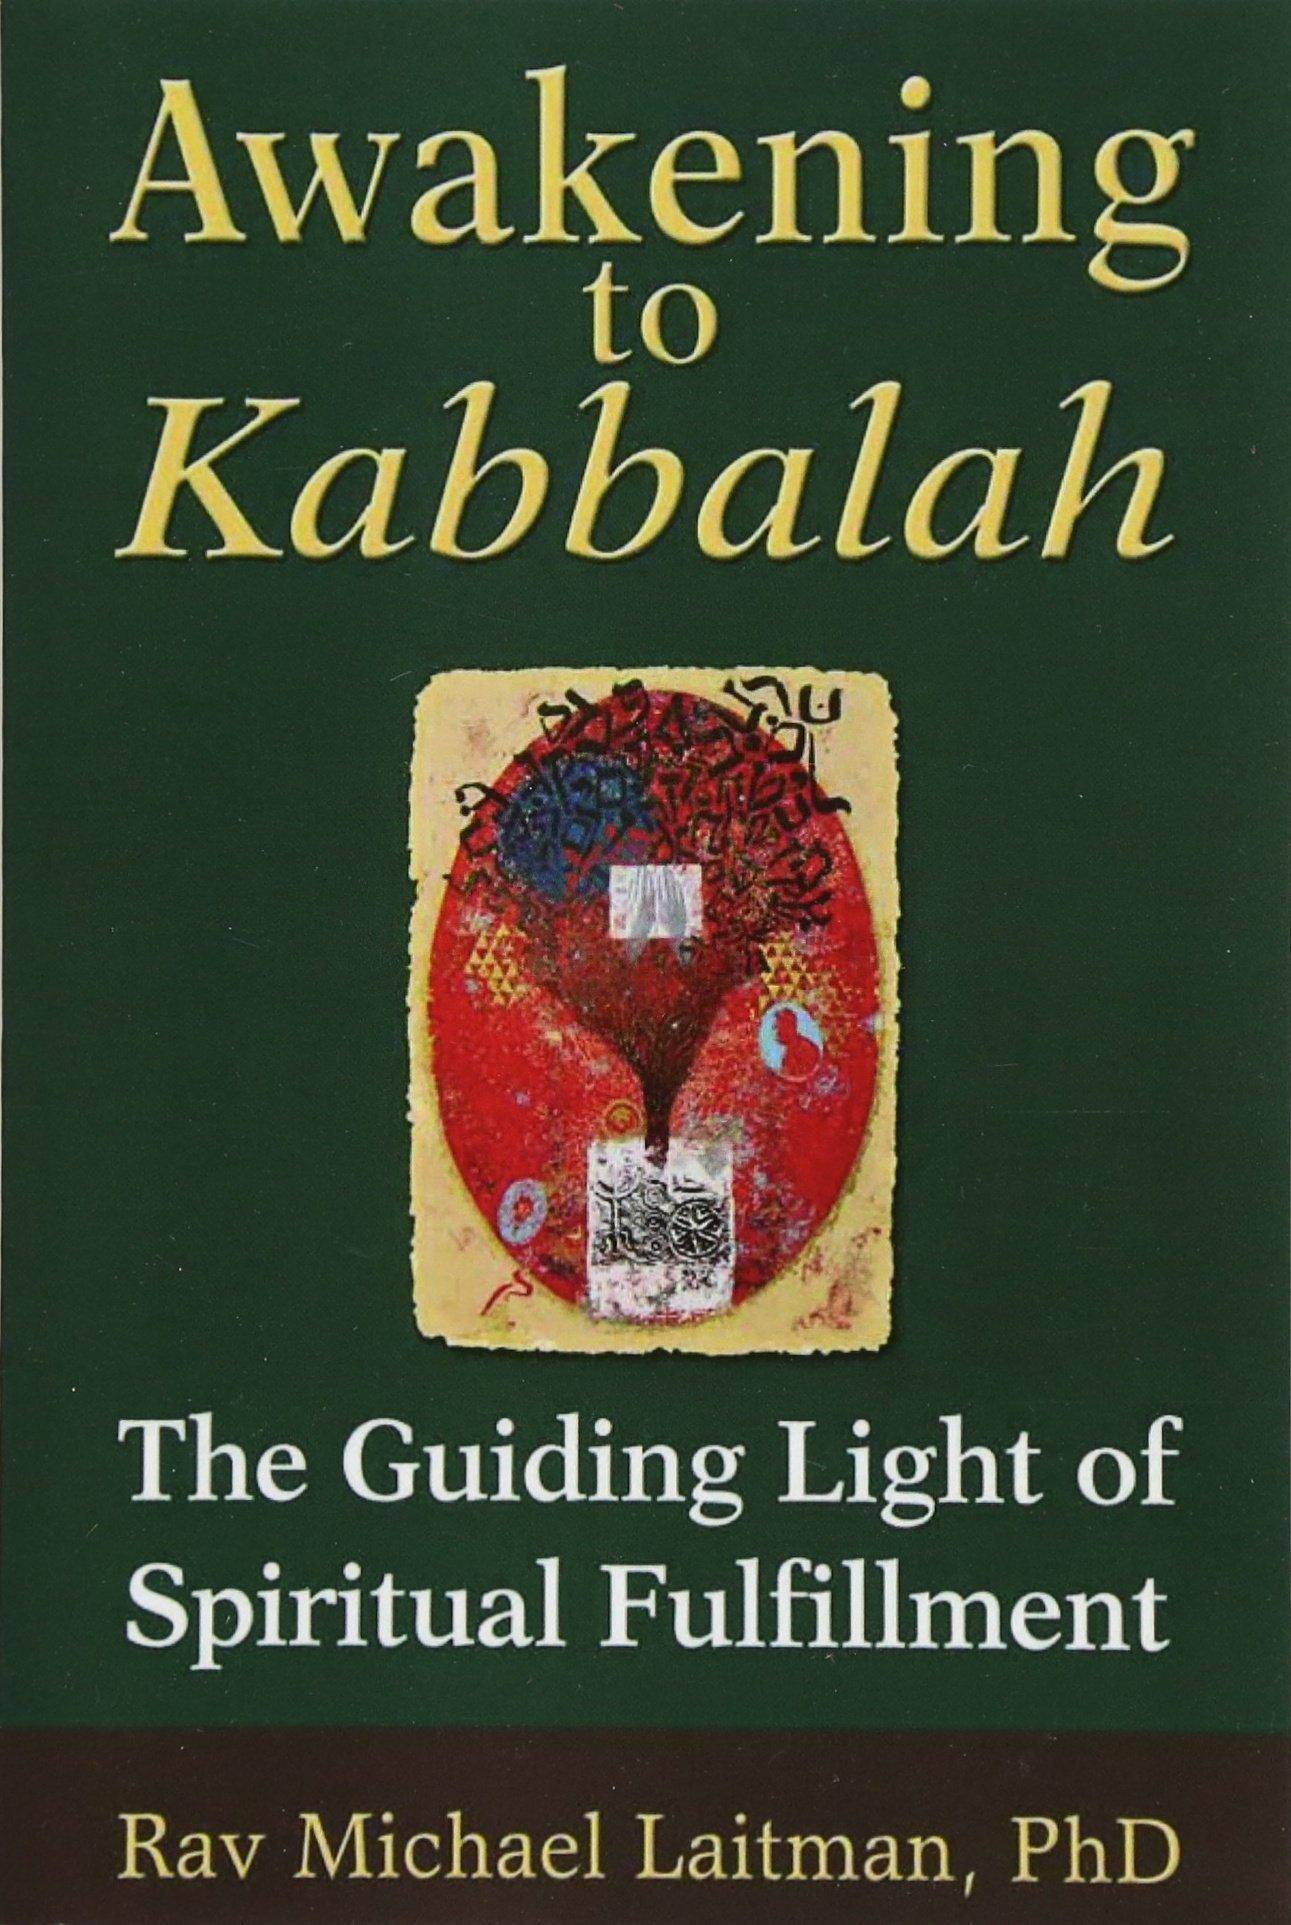 Awakening to Kabbalah: The Guiding Light of Spiritual Fulfillmen - CA Corrections Bookstore